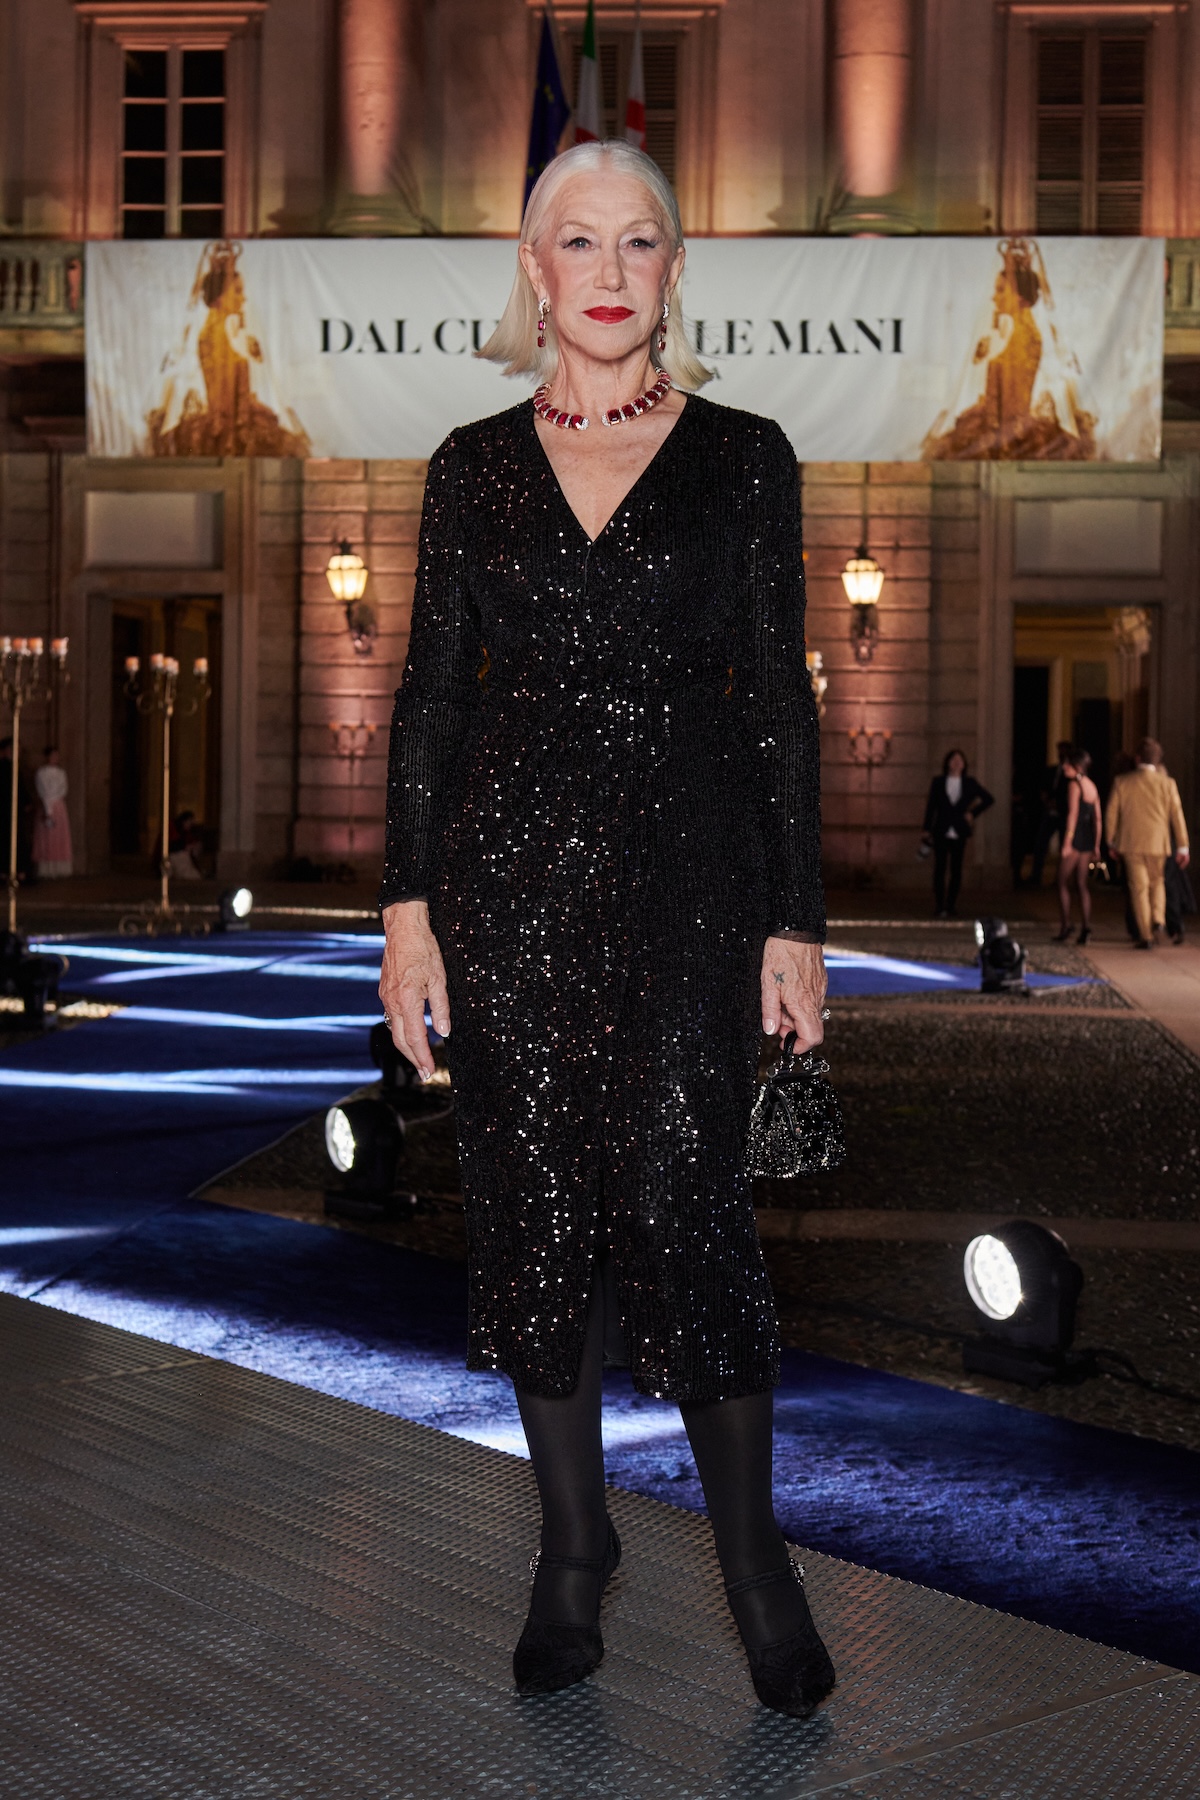 Helen Mirren davanti al Palazzo Reale di Milano per la mostra Dal cuore alla mani - Dolce&Gabbana